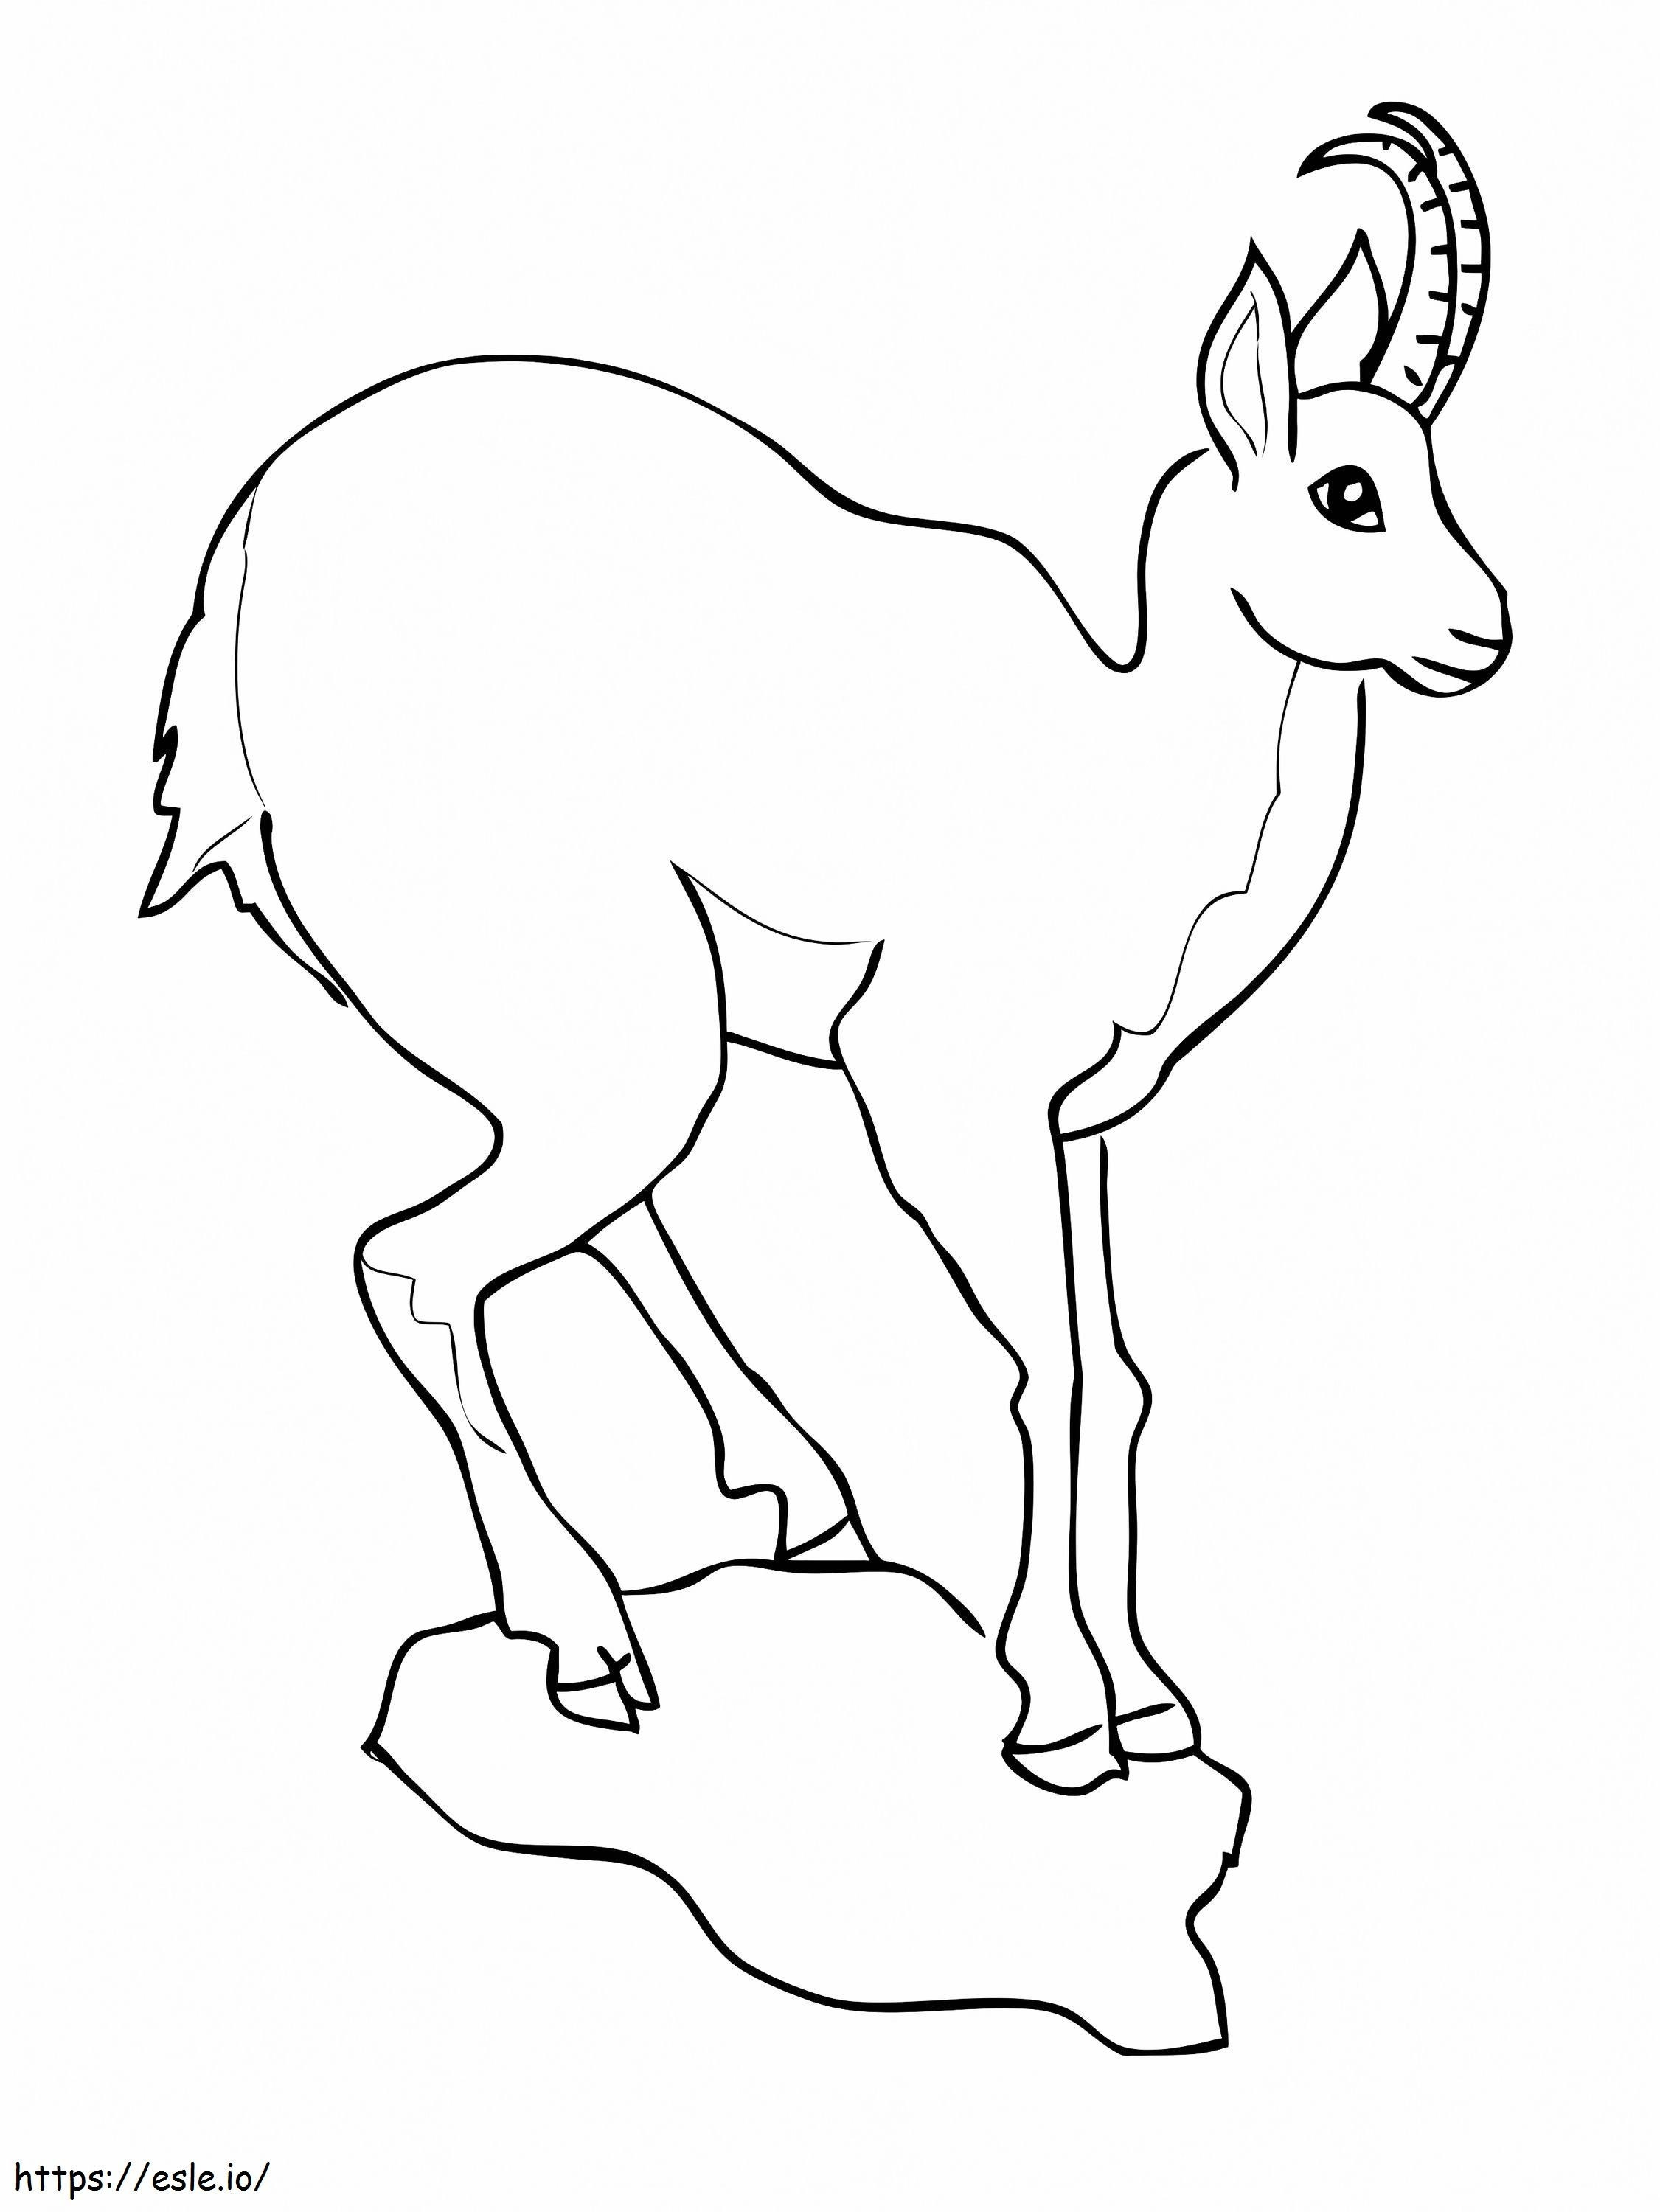 Camoscio europeo dell'antilope della capra da colorare